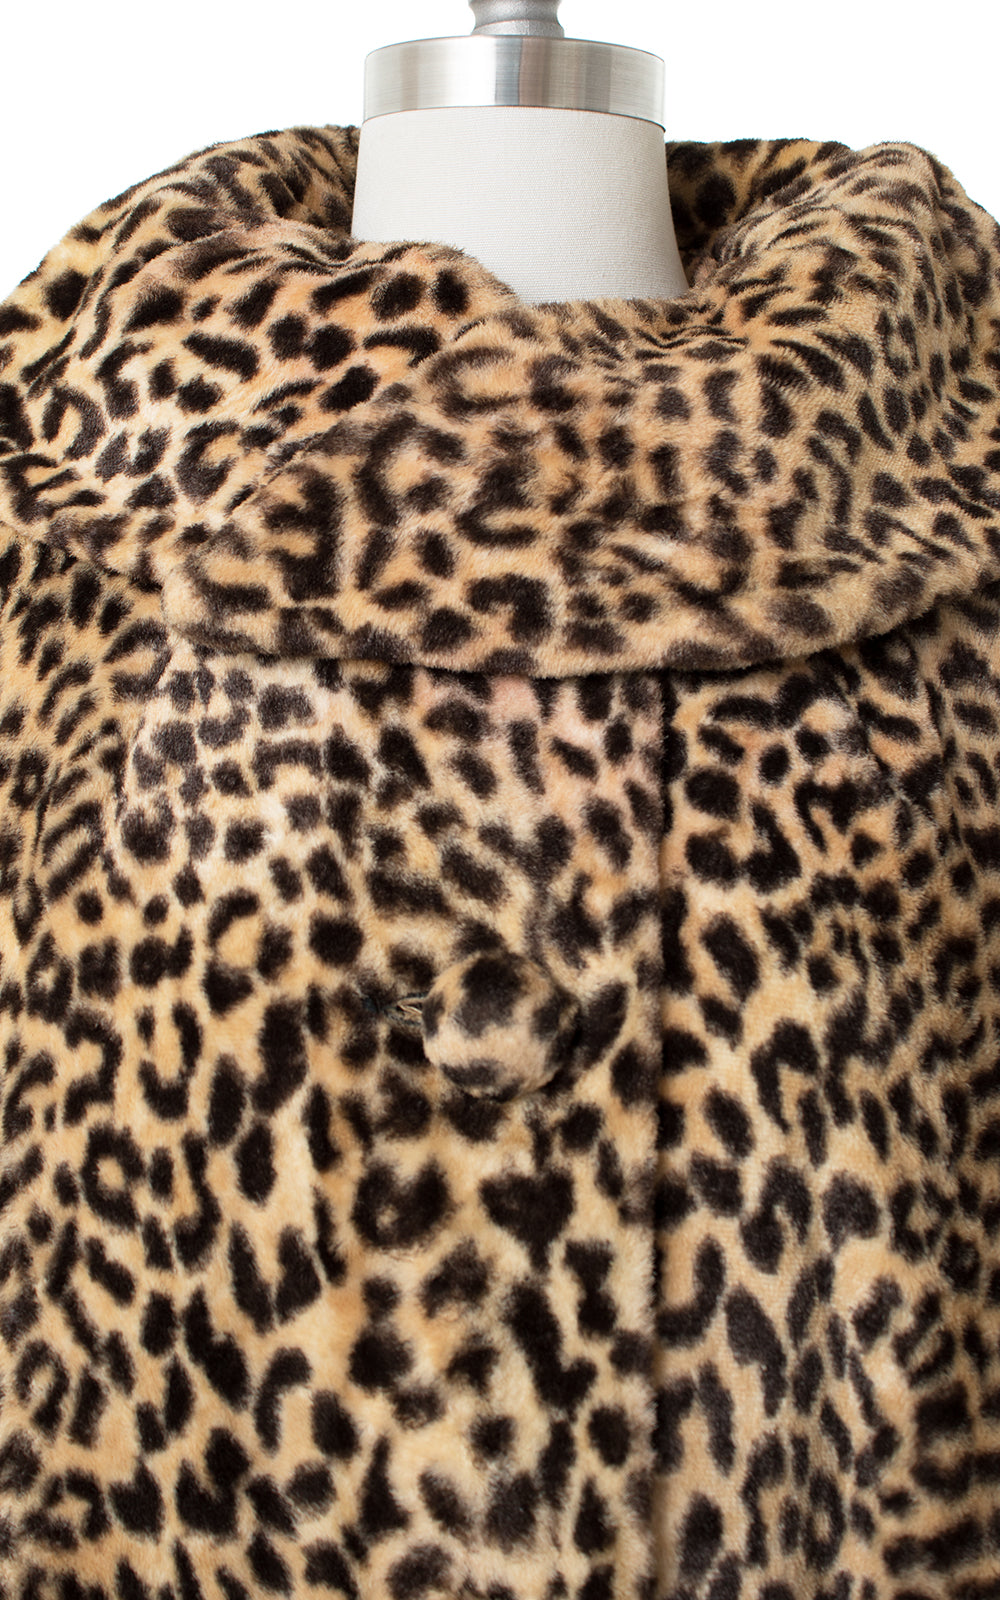 1960s Leopard Print Faux Fur Swing Coat